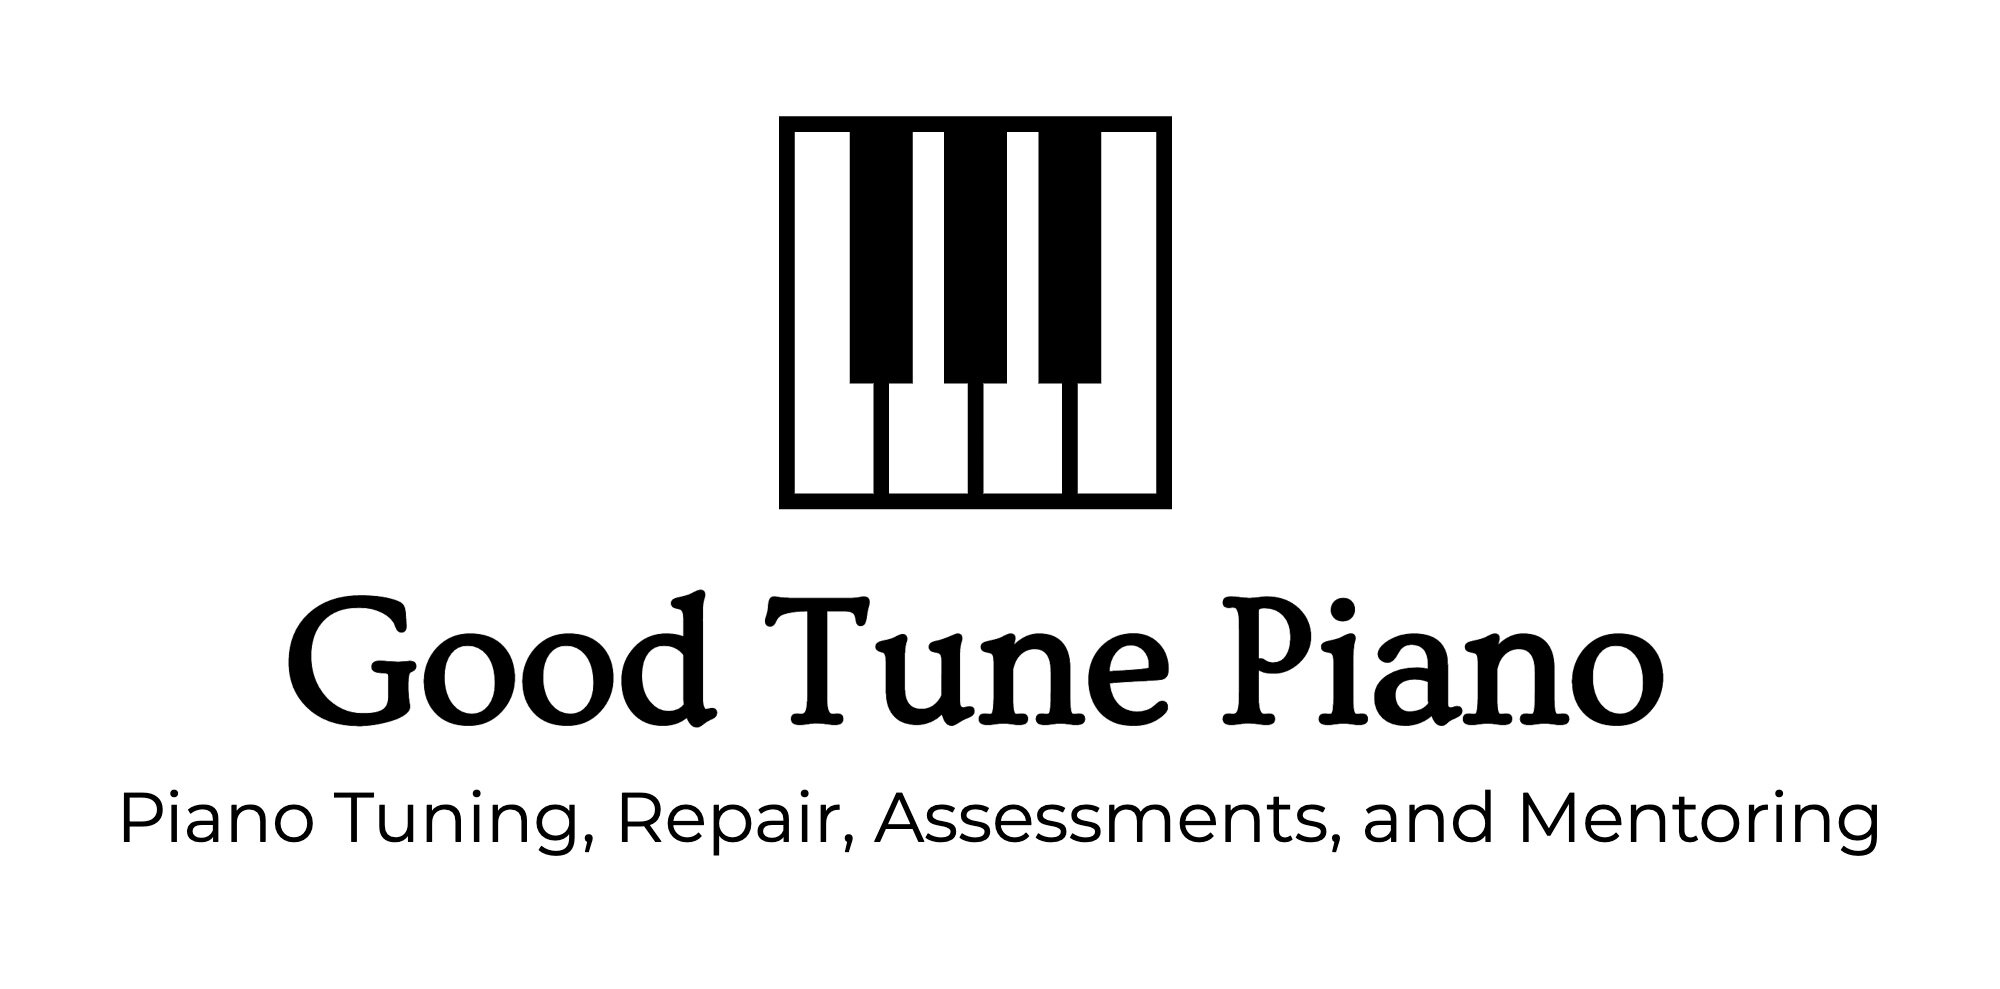 Good Tune Piano